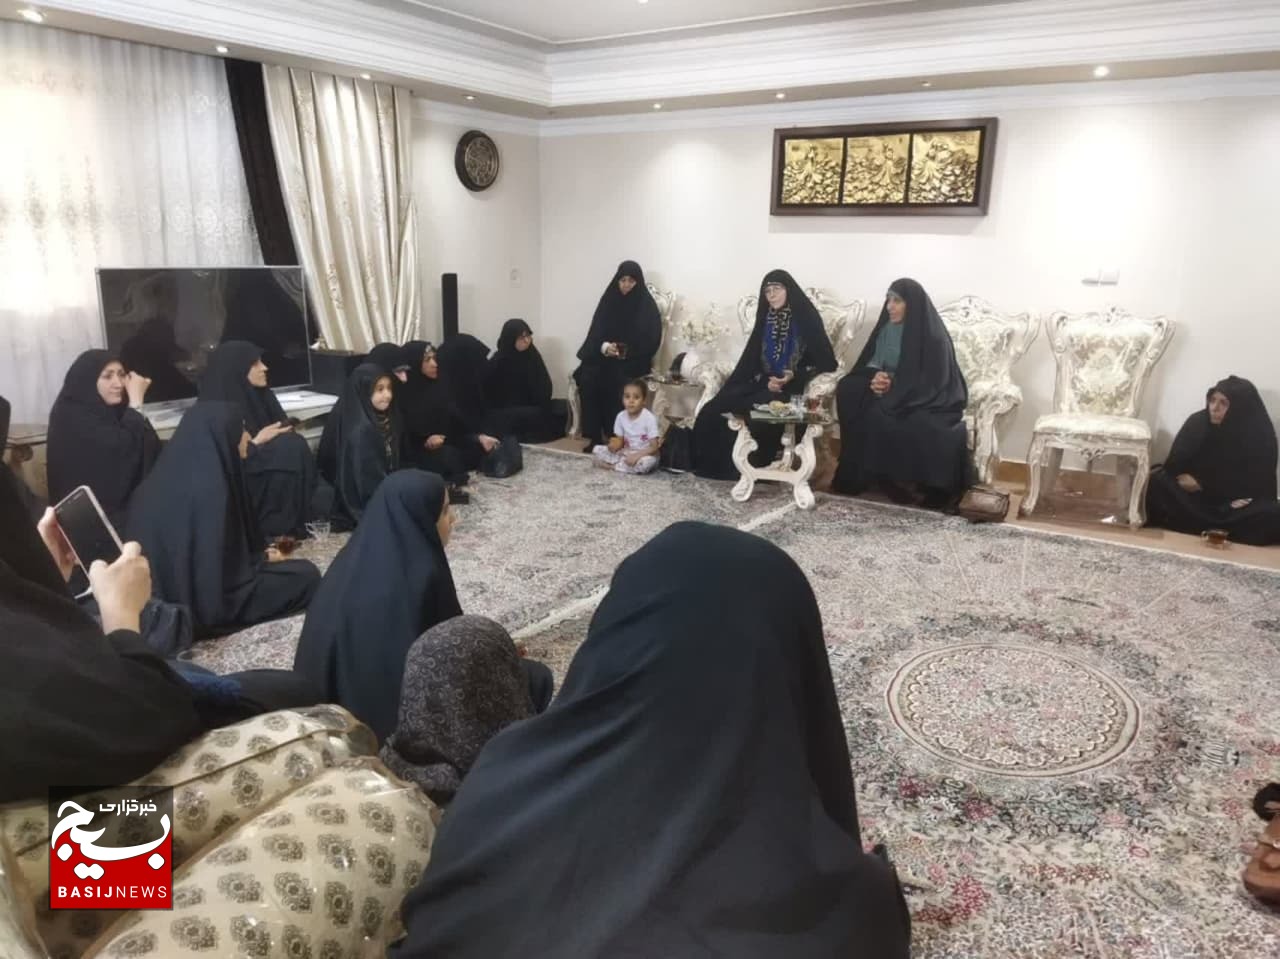 بررسی جایگاه زنان در ایران و جوامع غربی باحضور بانوی تازه مسلمان شده آلمانی